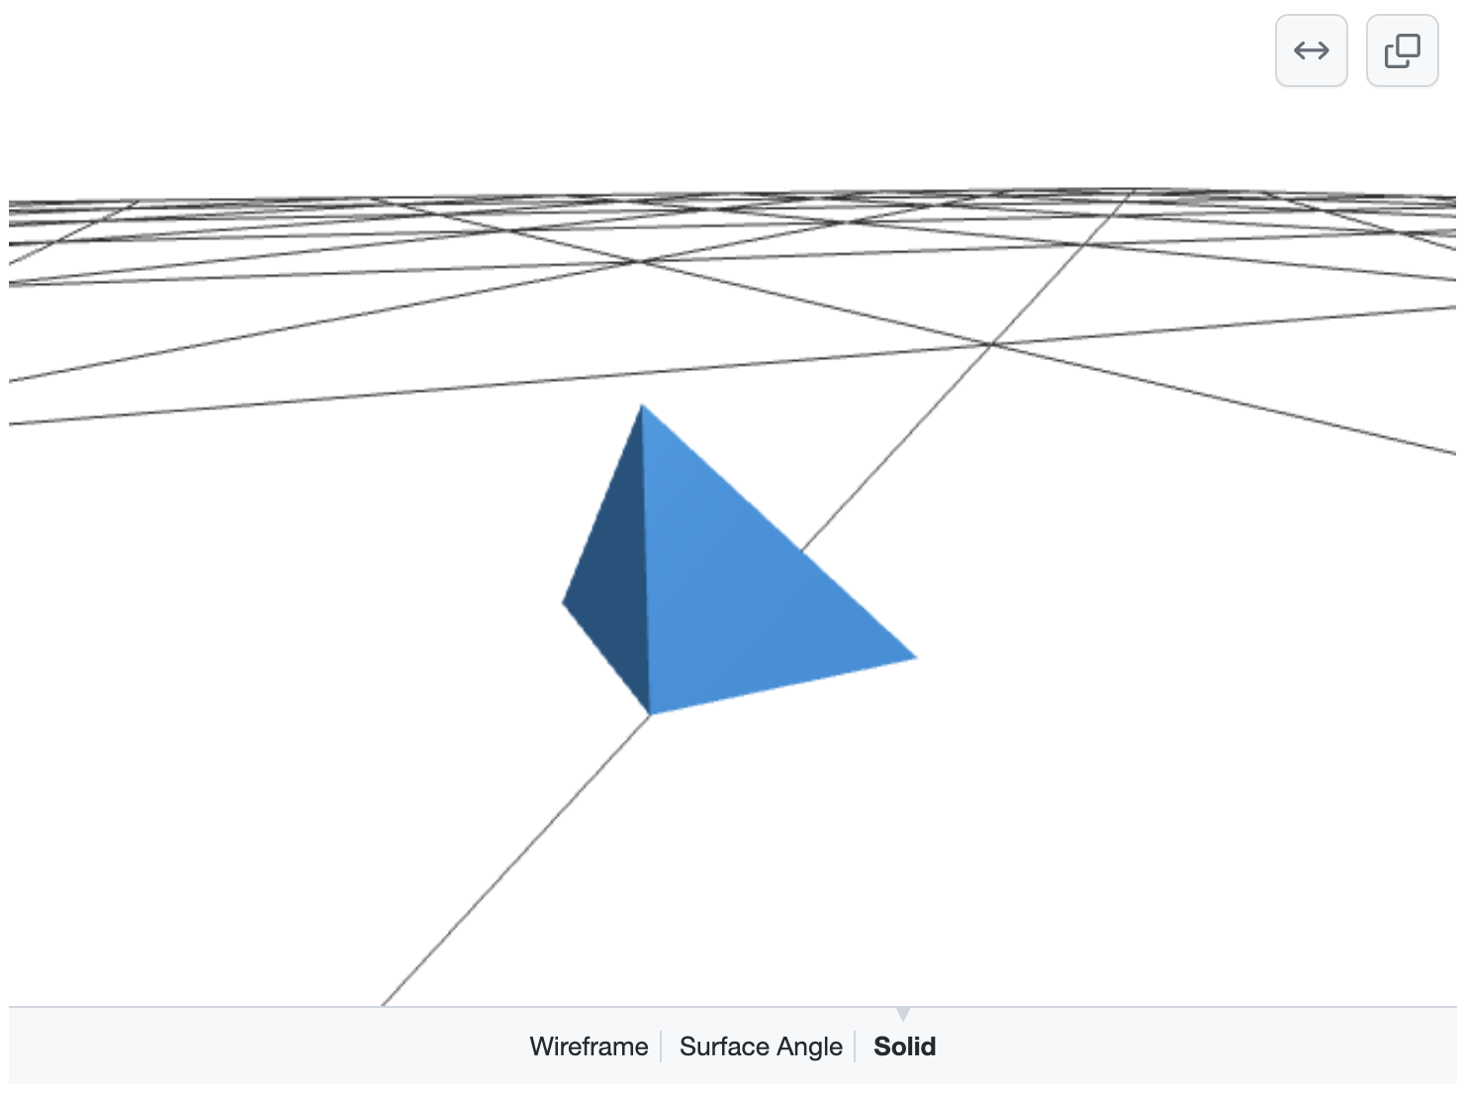 白底上黑色线条网格上方的蓝色棱锥体 3D 模型的屏幕截图。 用于选择“线框”、“曲面角度”或“实心”的选项显示在底部。